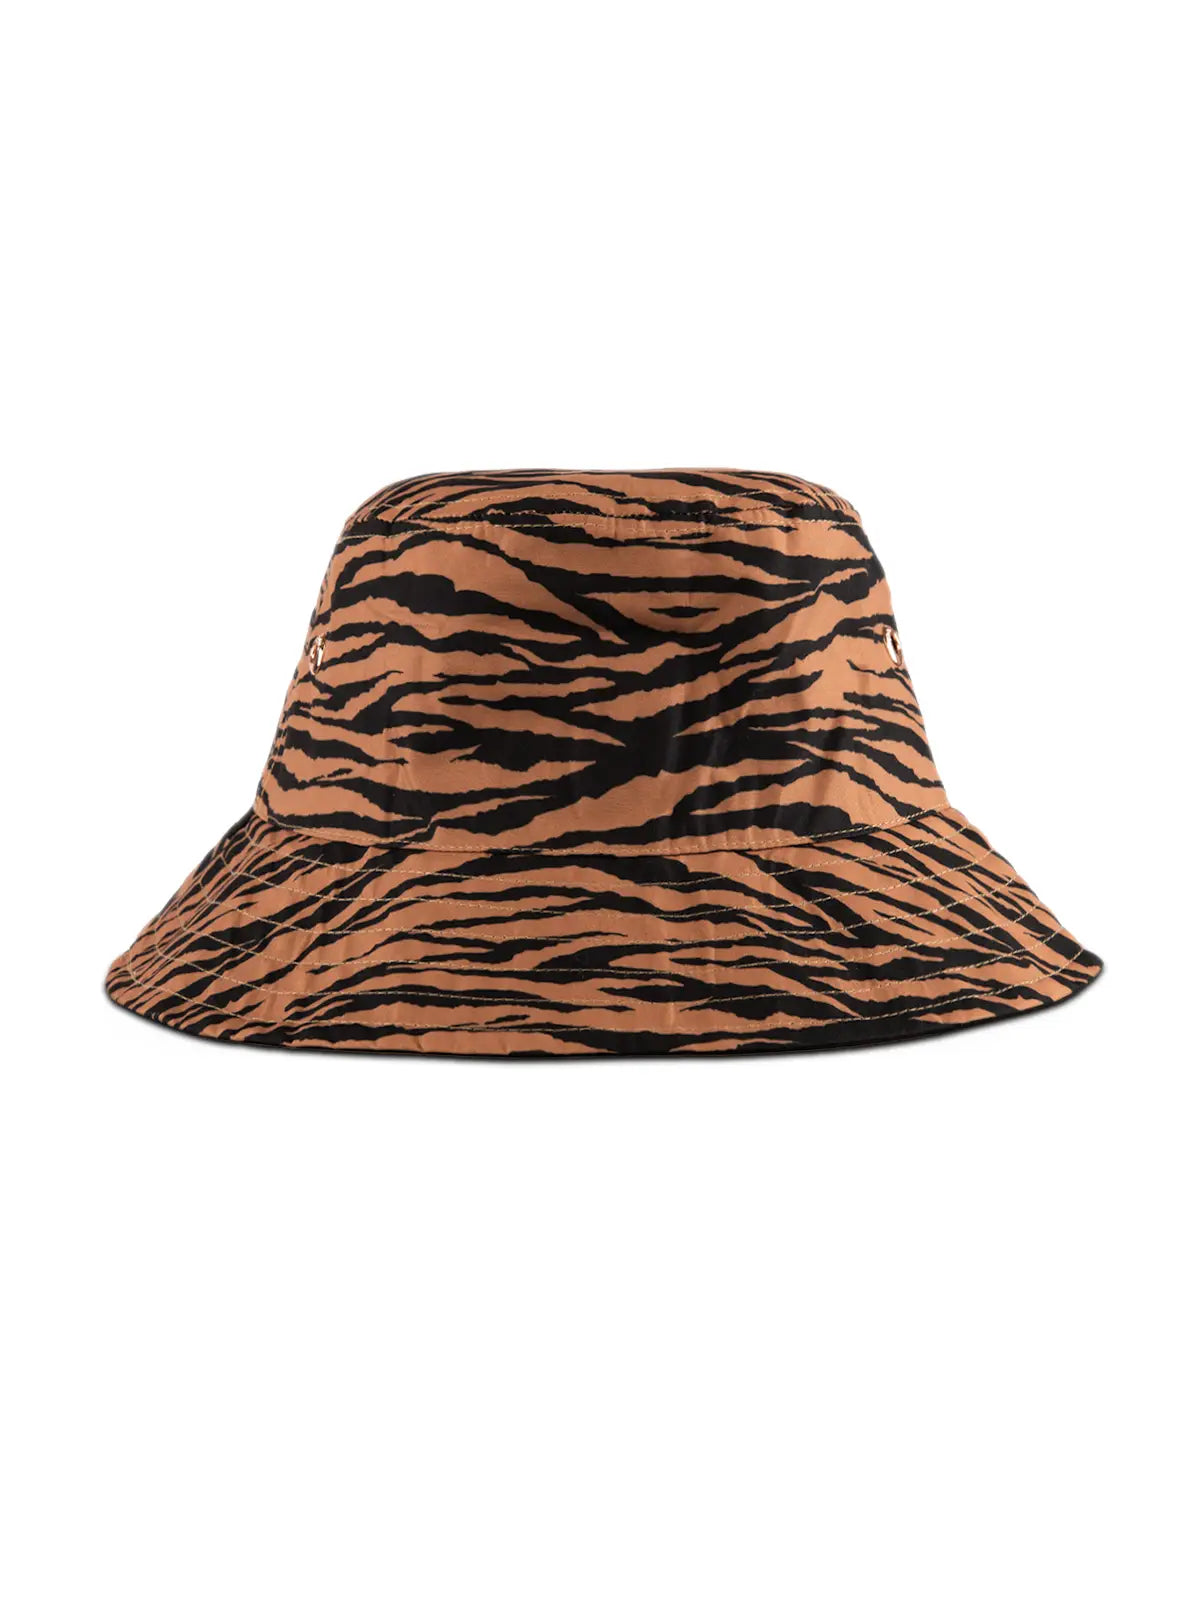 Reversible Bucket Hat El Tigre